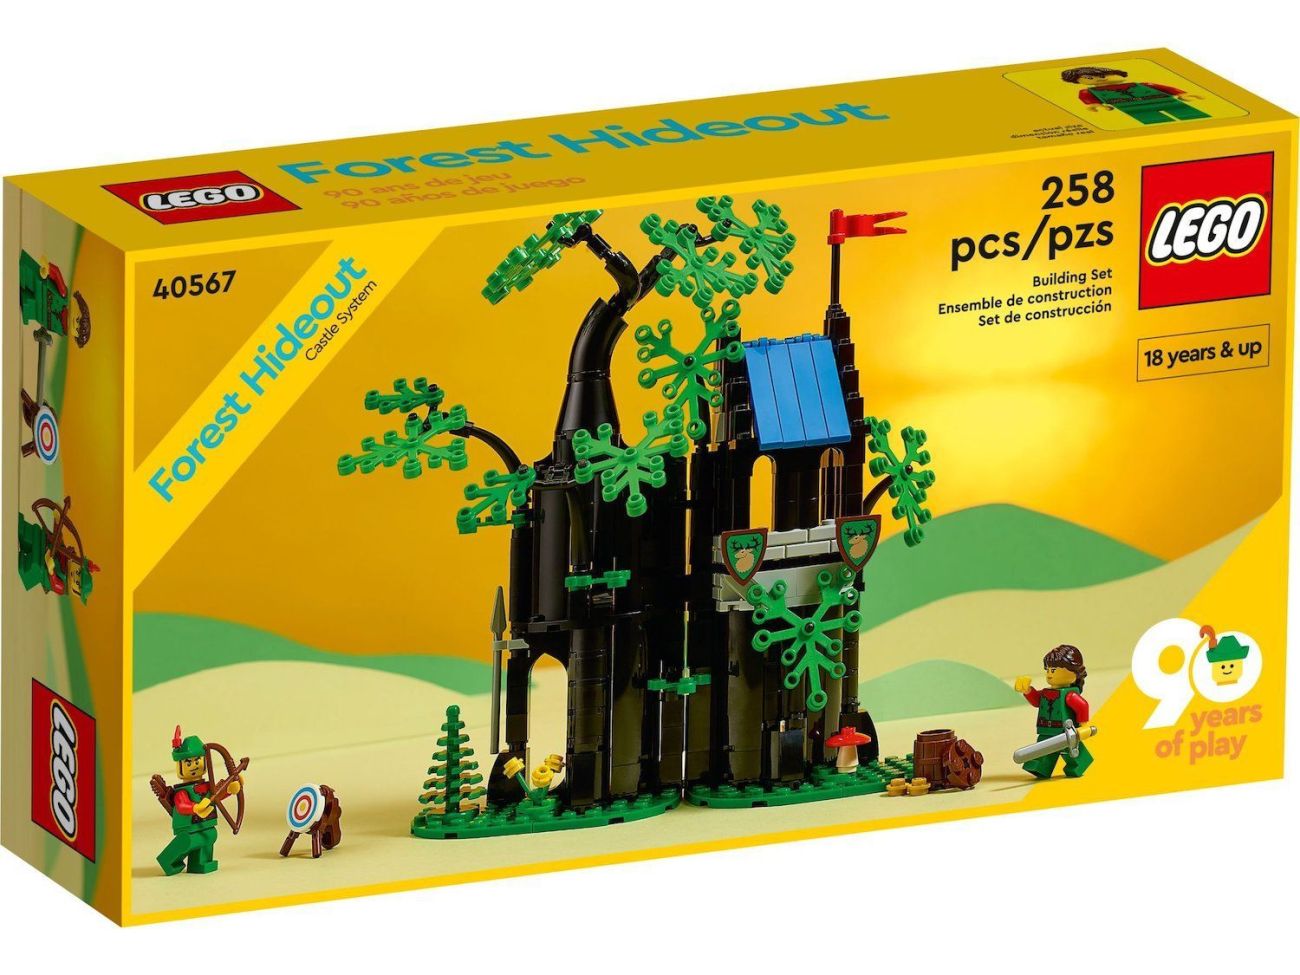 LEGO 40567 Versteck im Wald